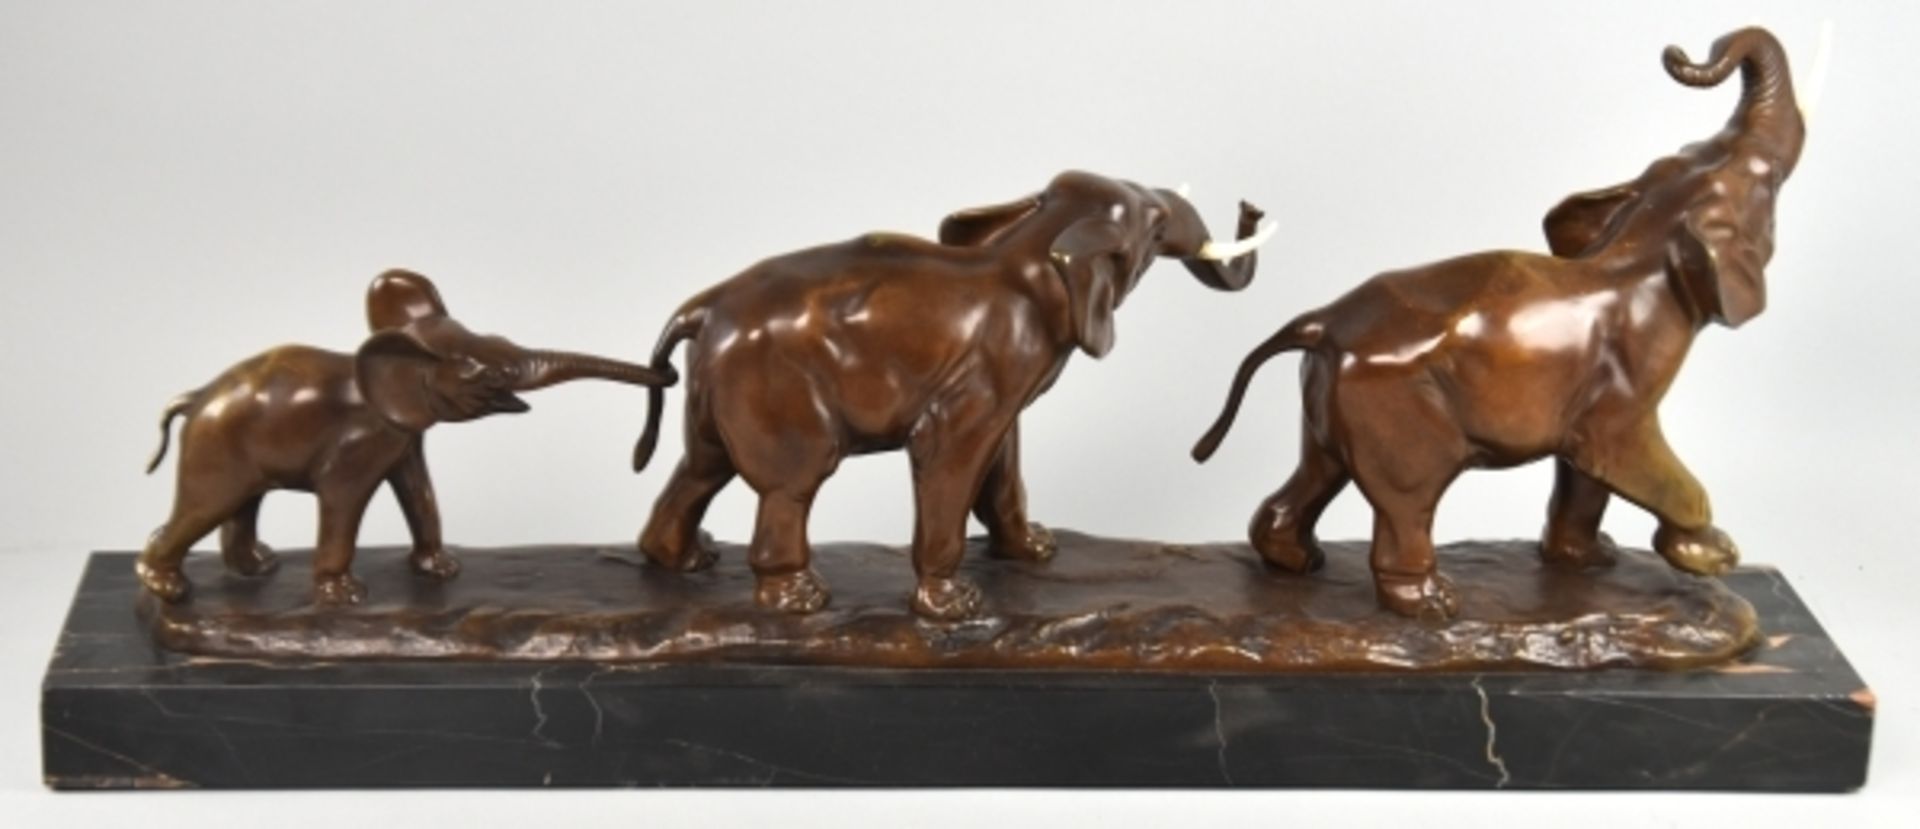 ROCHARD Irenee (1906 Villefranche-sur-Saône - Paris 1984) "Elefantengruppe", bestehend aus drei - Bild 3 aus 4